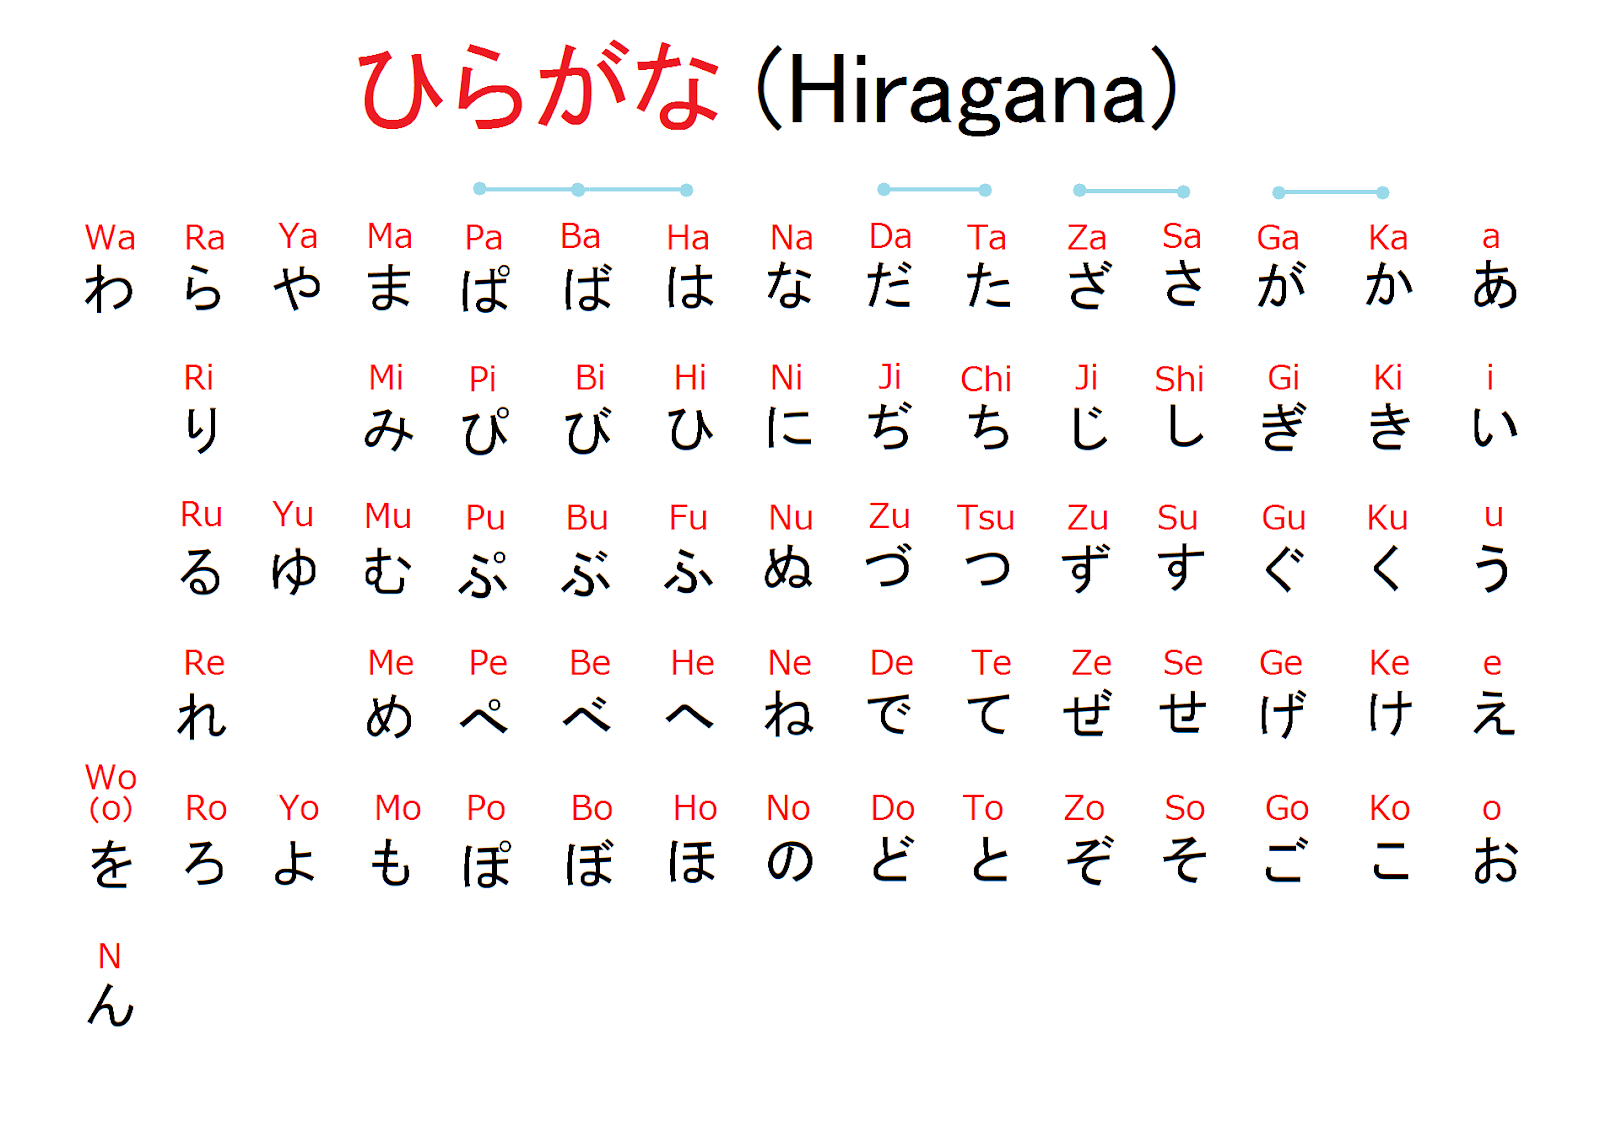 Japanese hiragana keyboard.